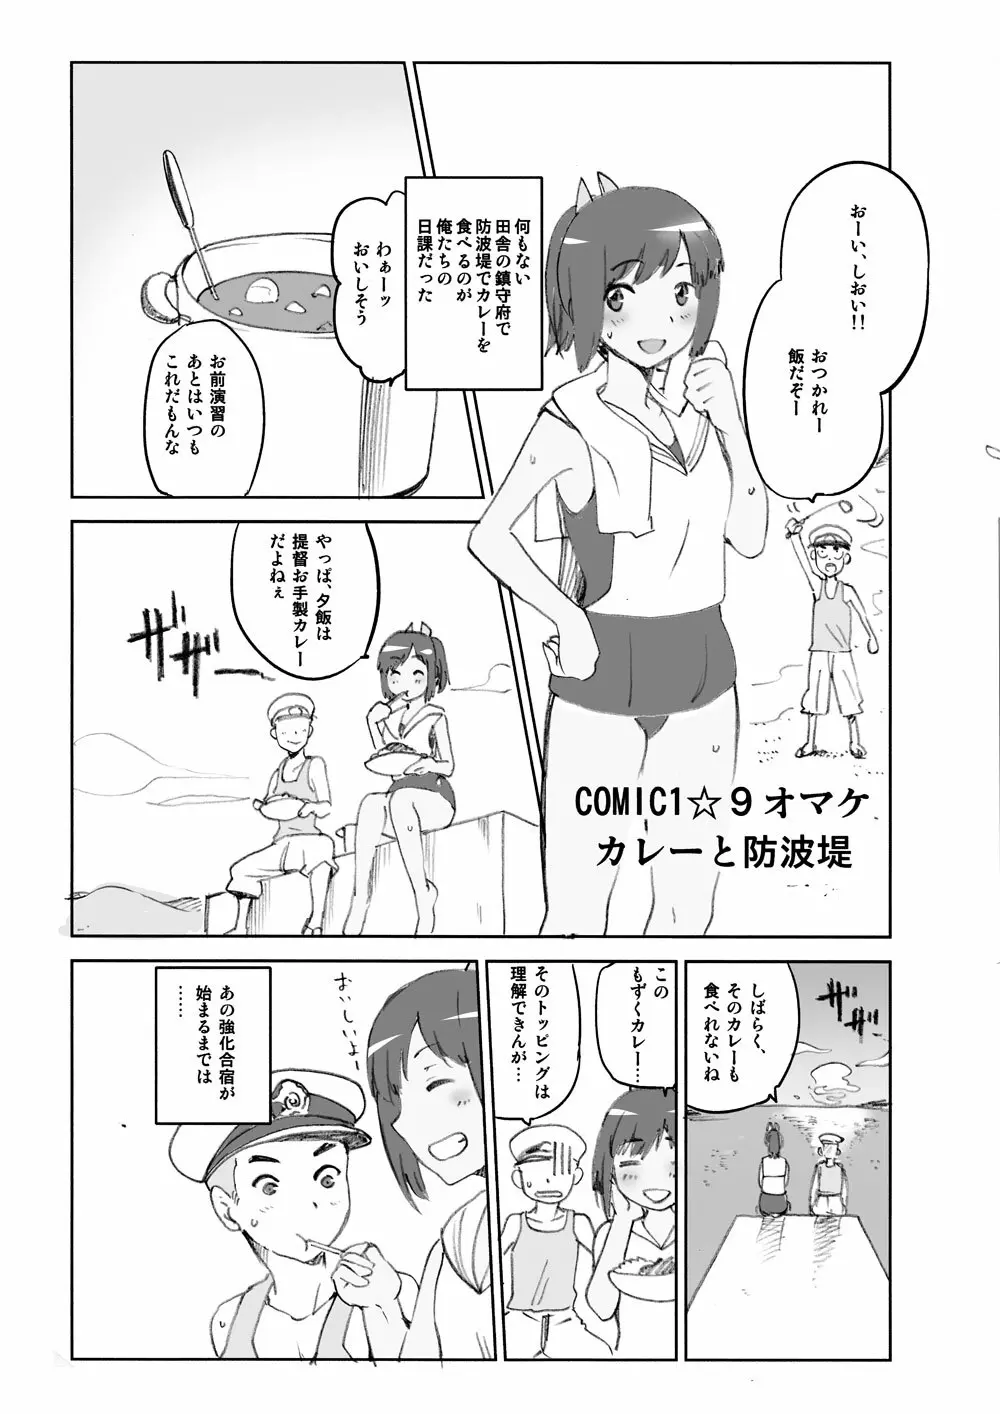 COMIC1☆9 オマケ カレーと防波堤 - page1